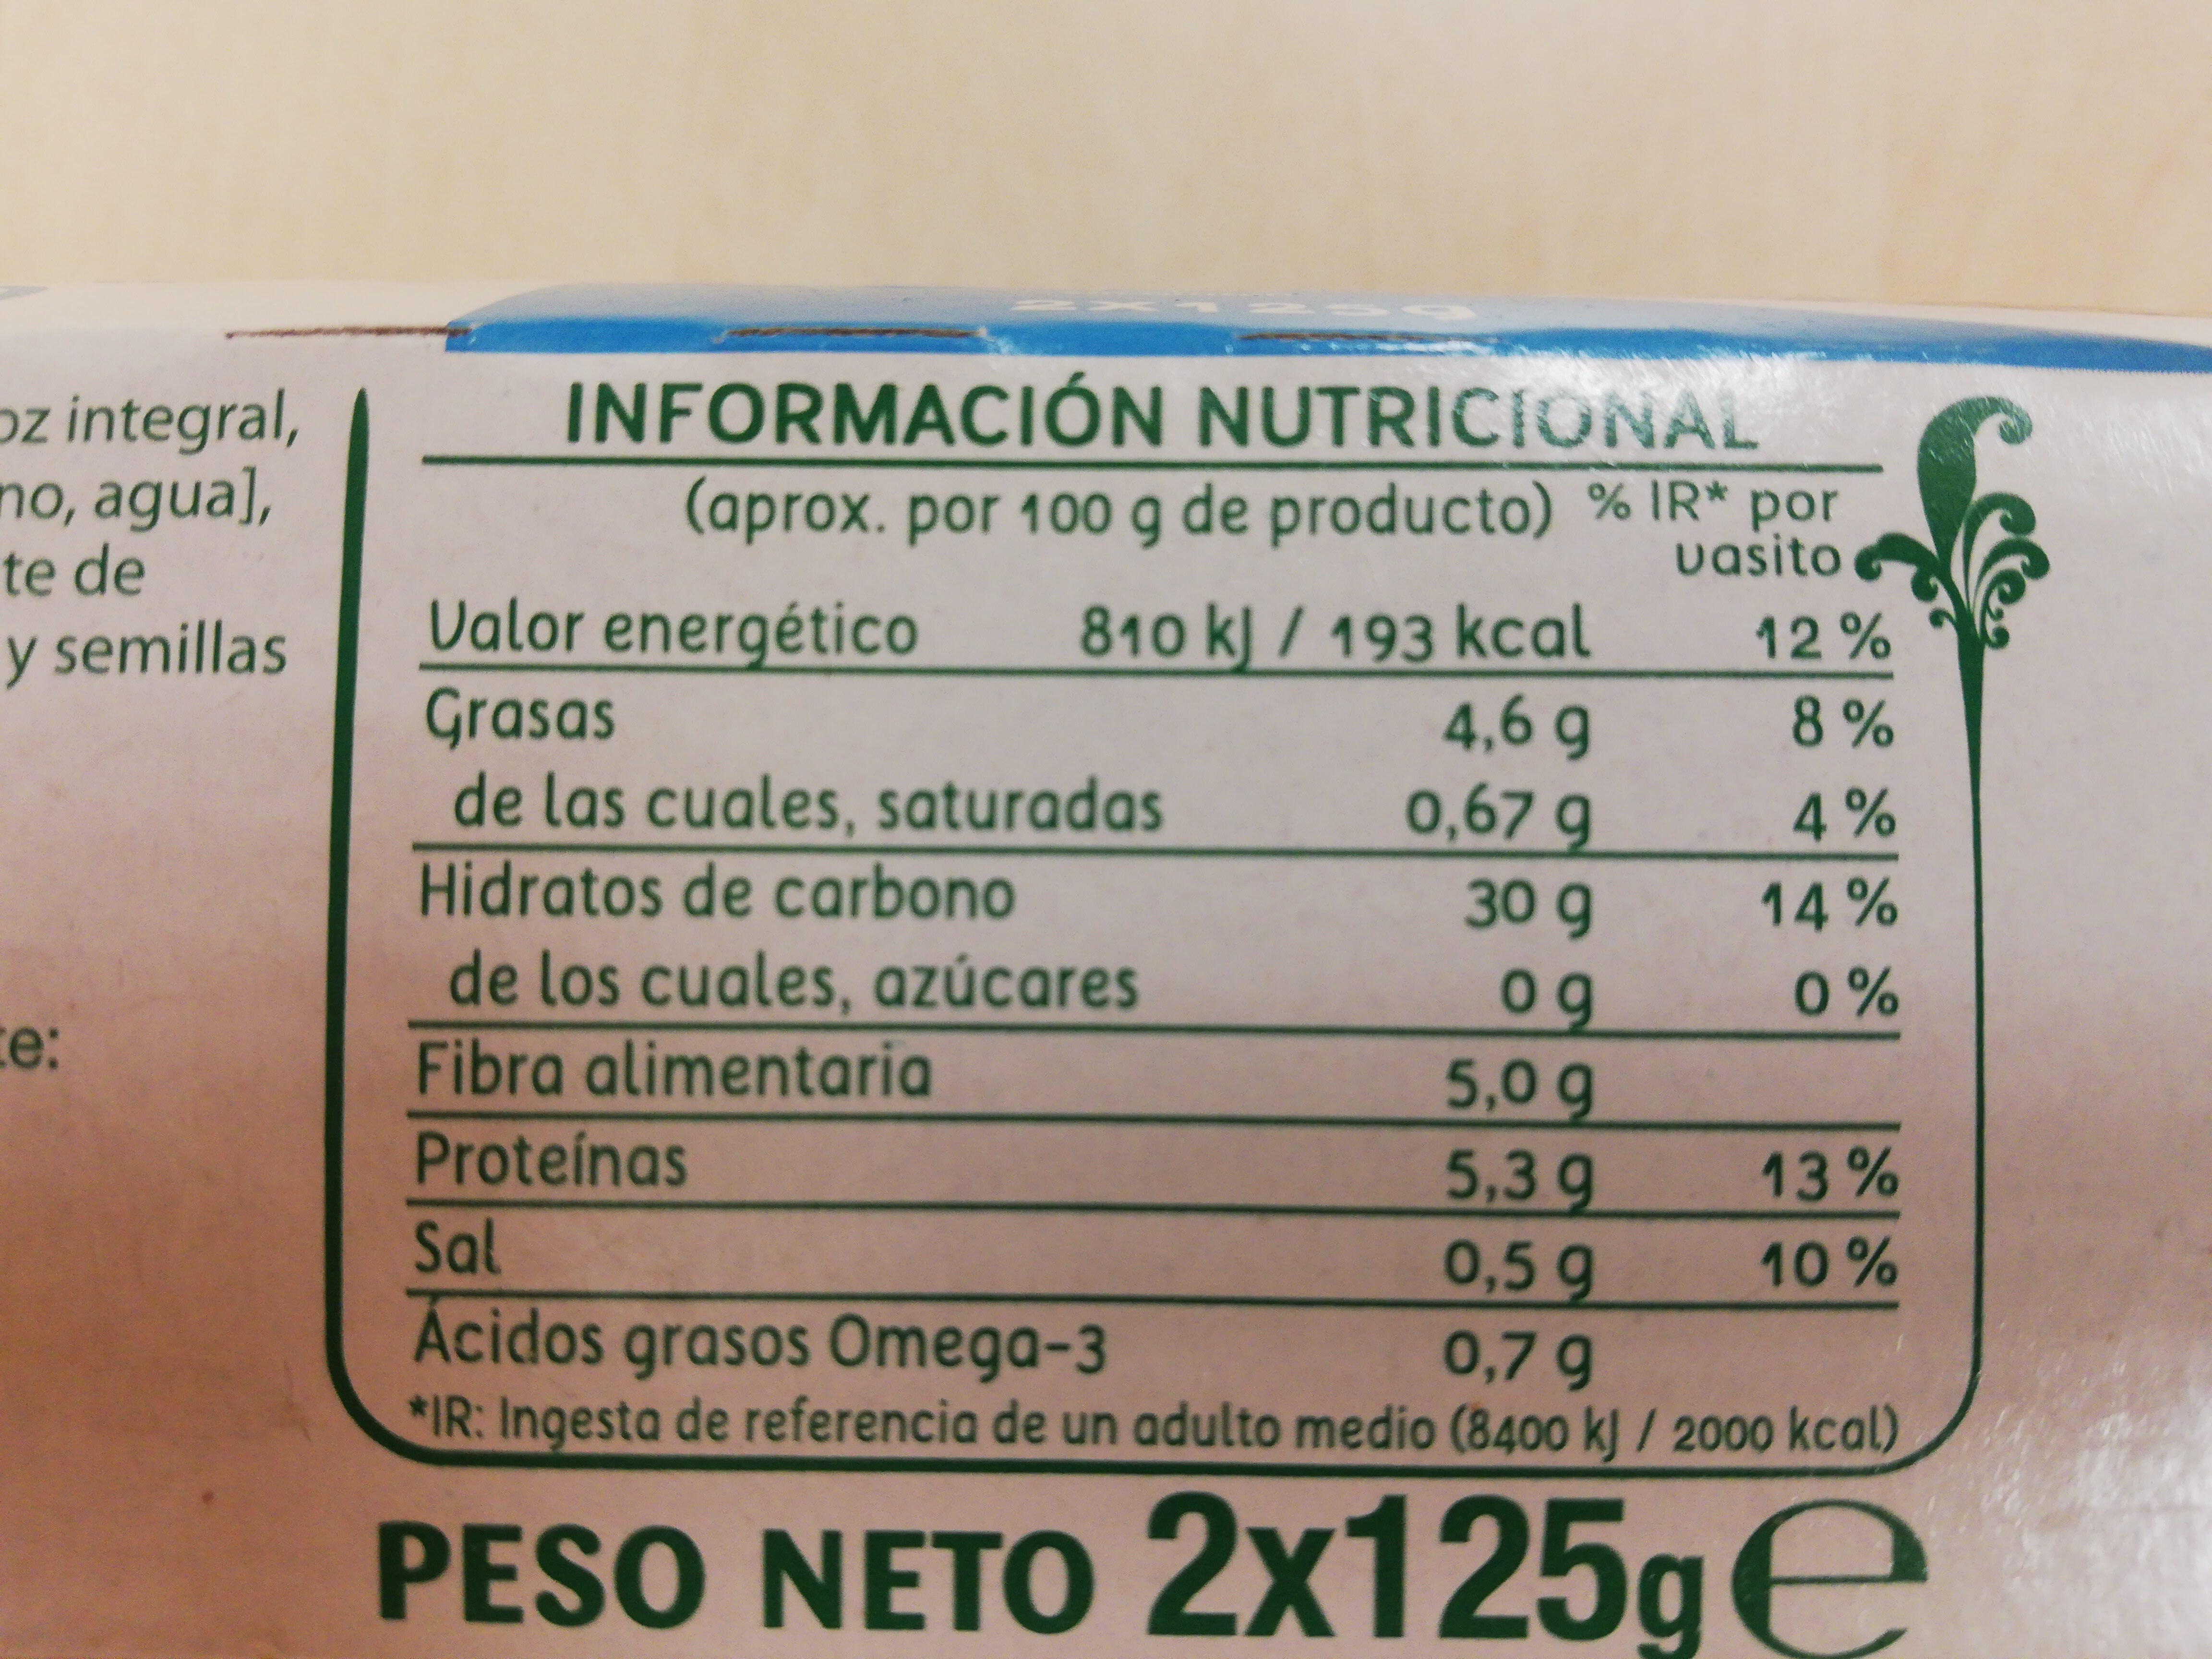 Multigrano chía y lino - Nutrition facts - es